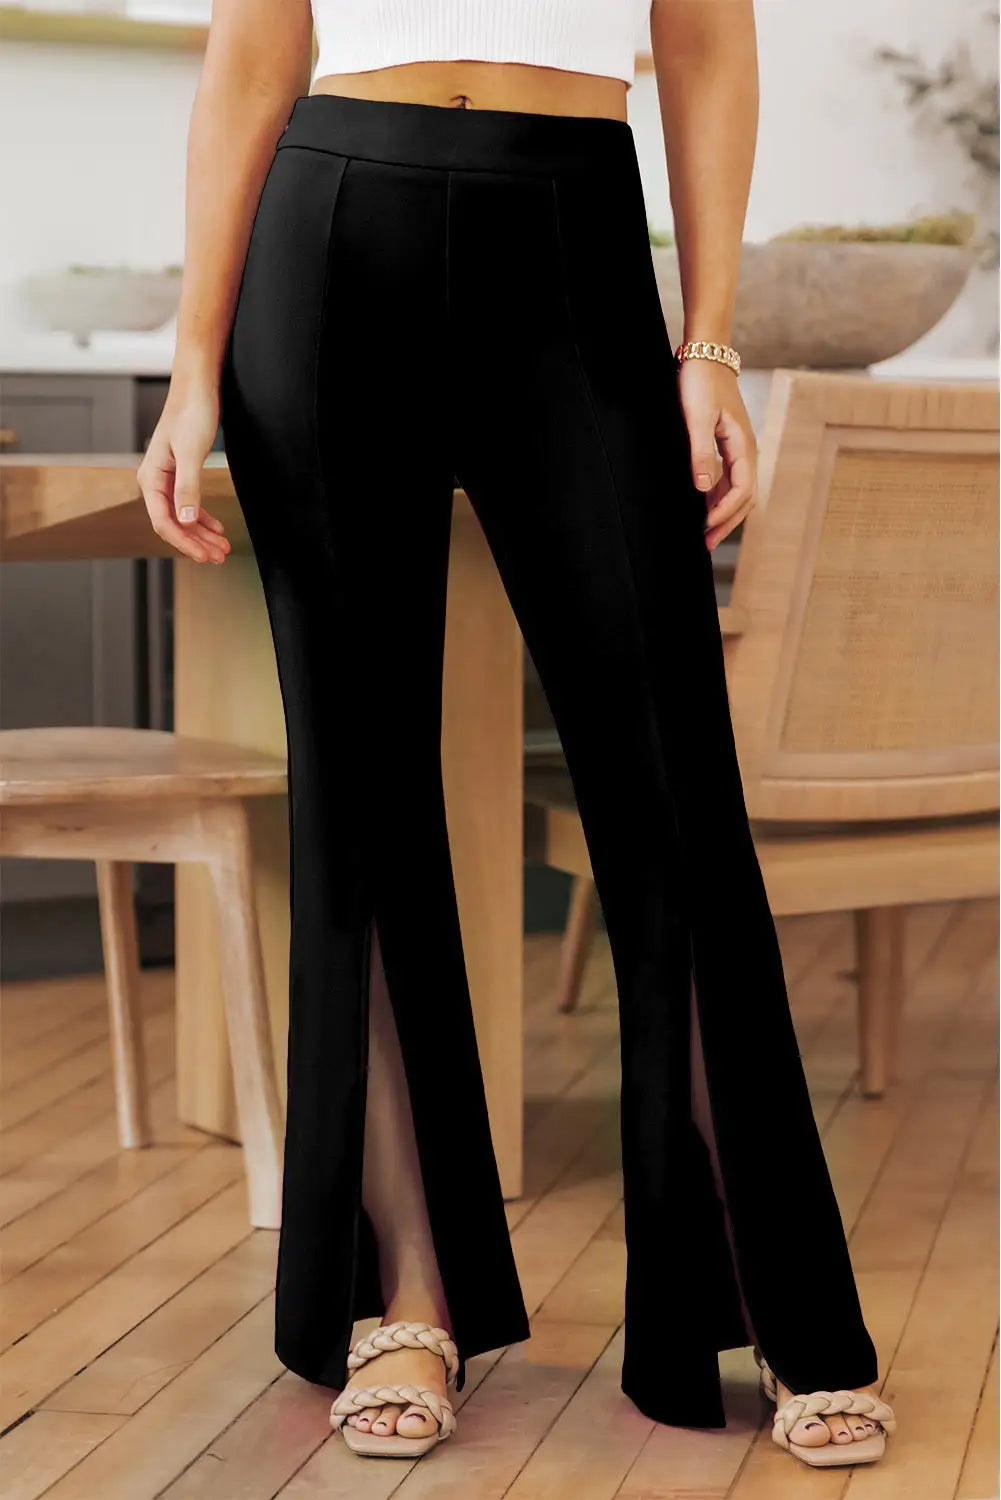 Rose split hem high waist pants - black / s / 95% polyester + 5% elastane - wide leg